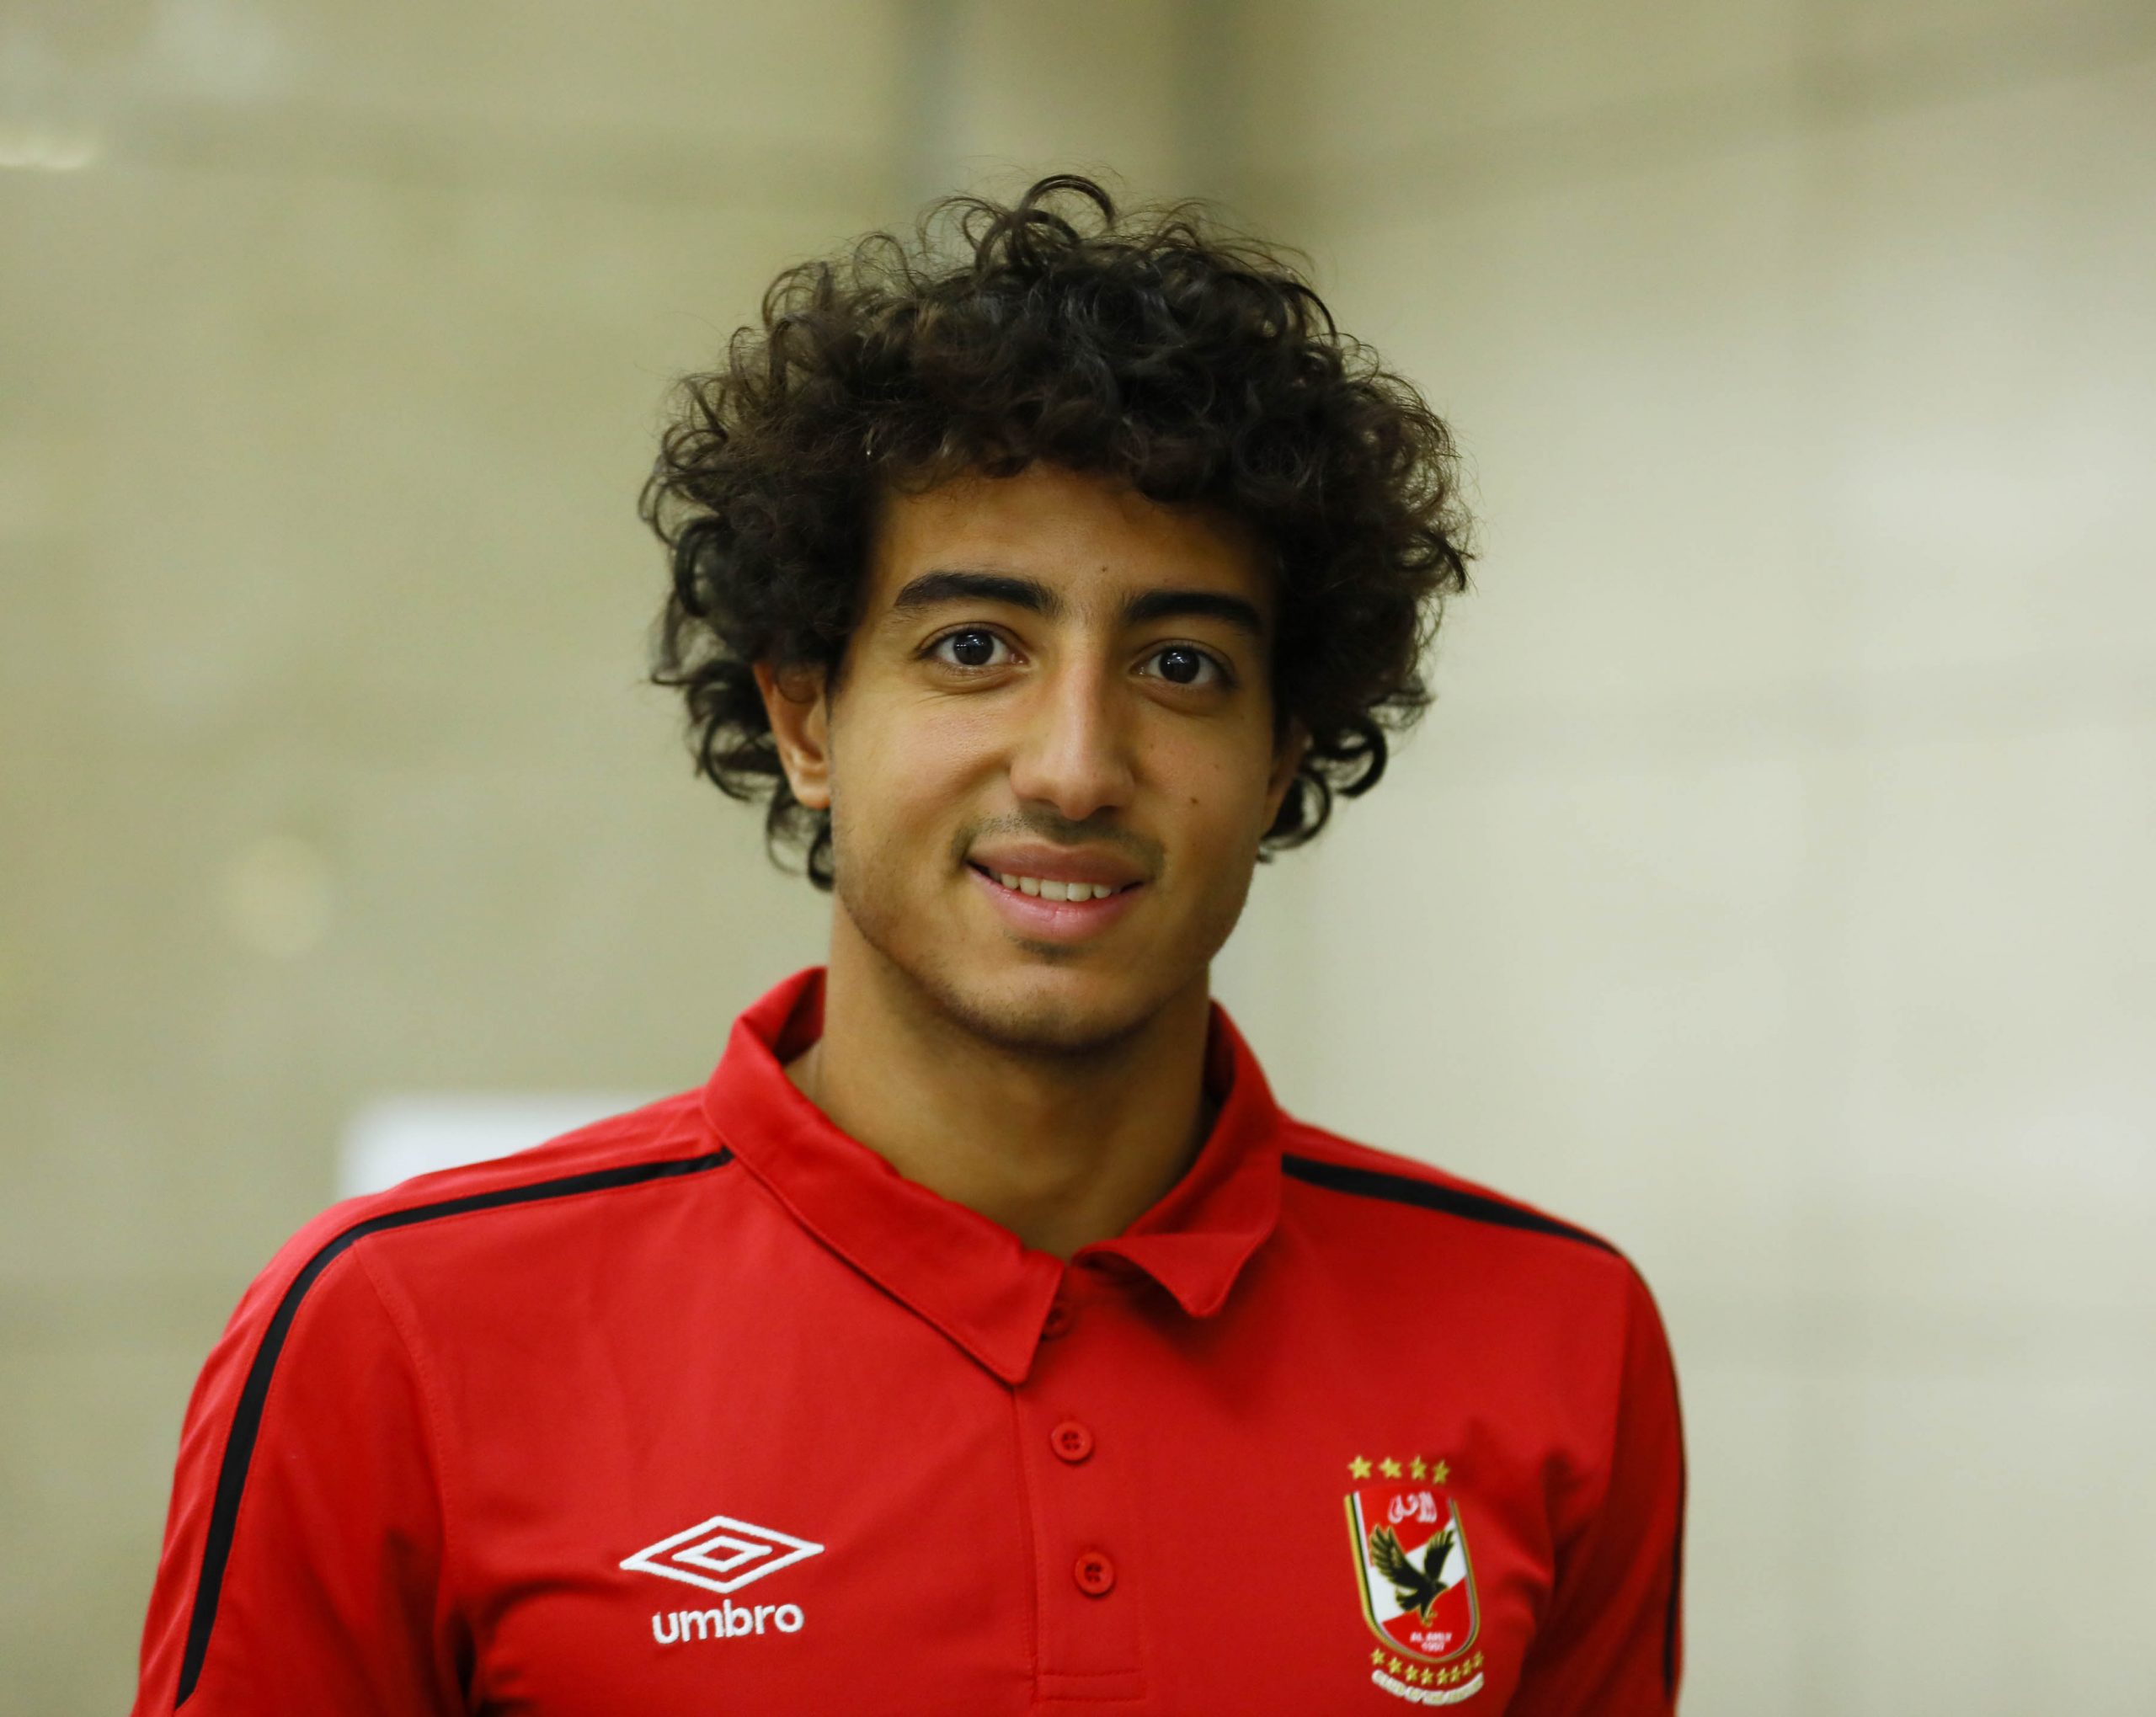 أحدهما محمد هاني  معتز البطاوي يكشف عن لاعبين طلب التعاقد معهم من الأهلي